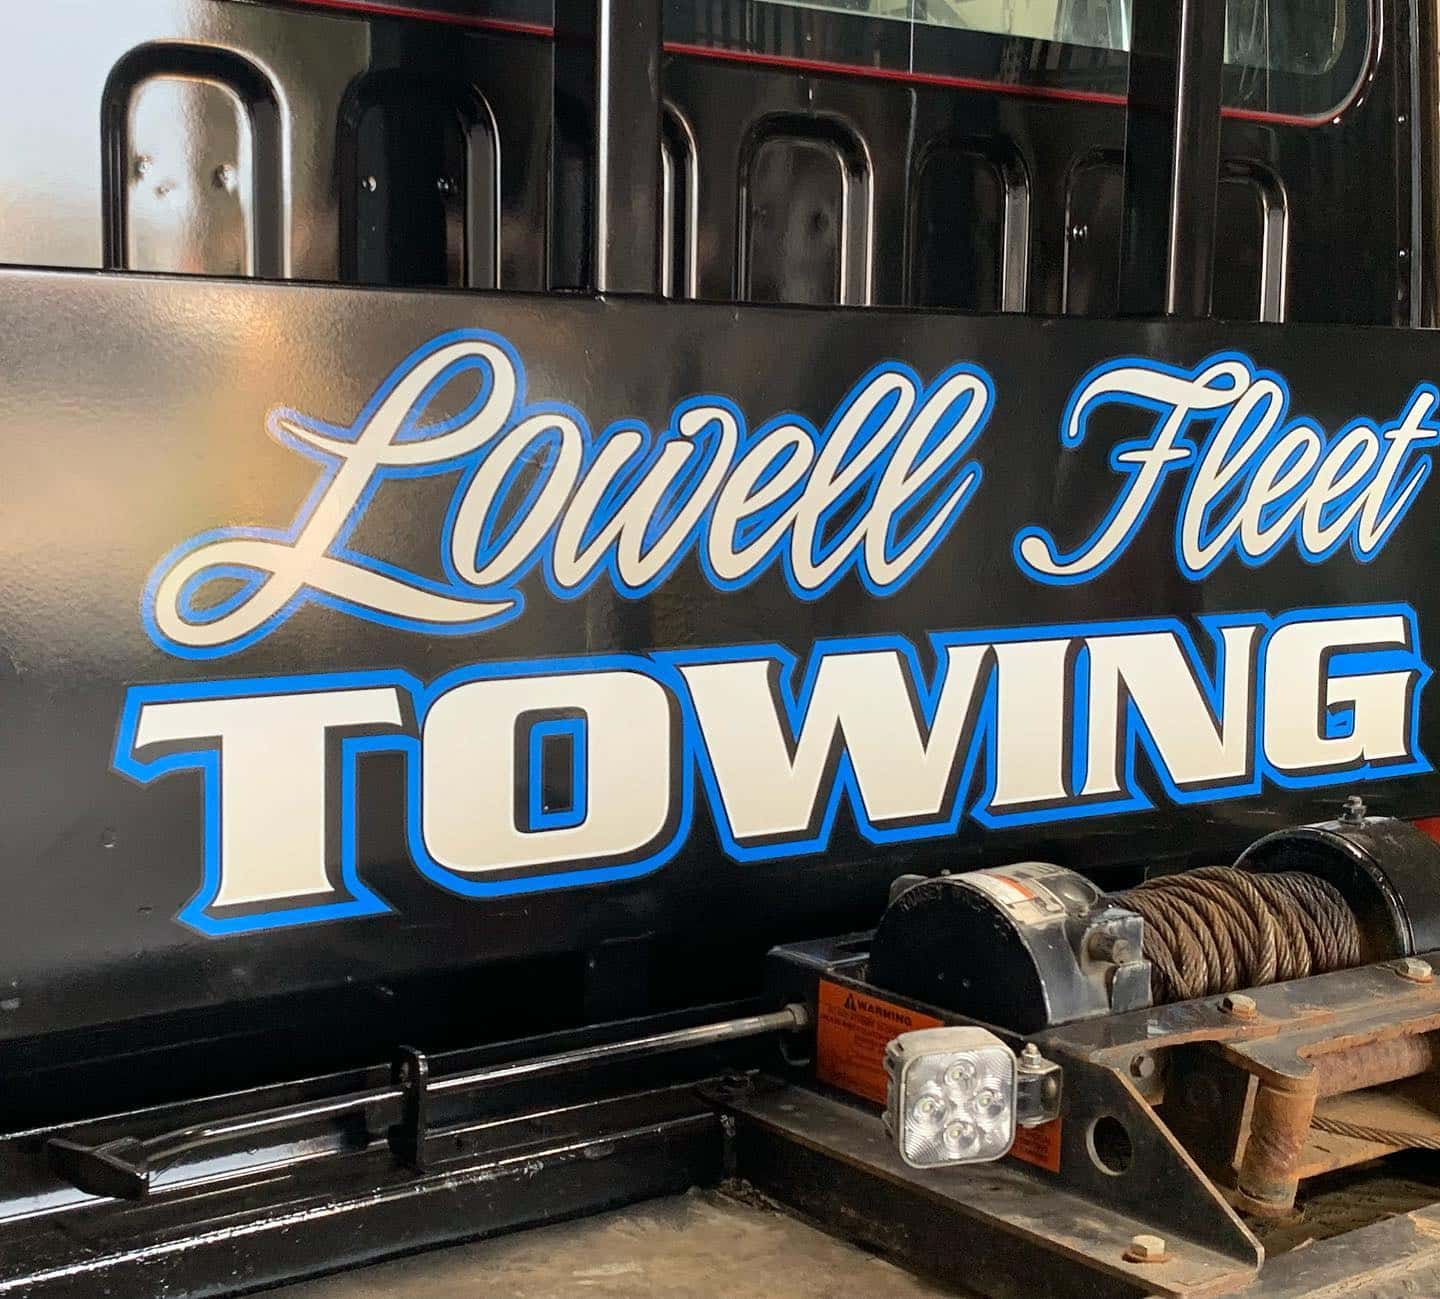 Lowell Fleet Towing 2